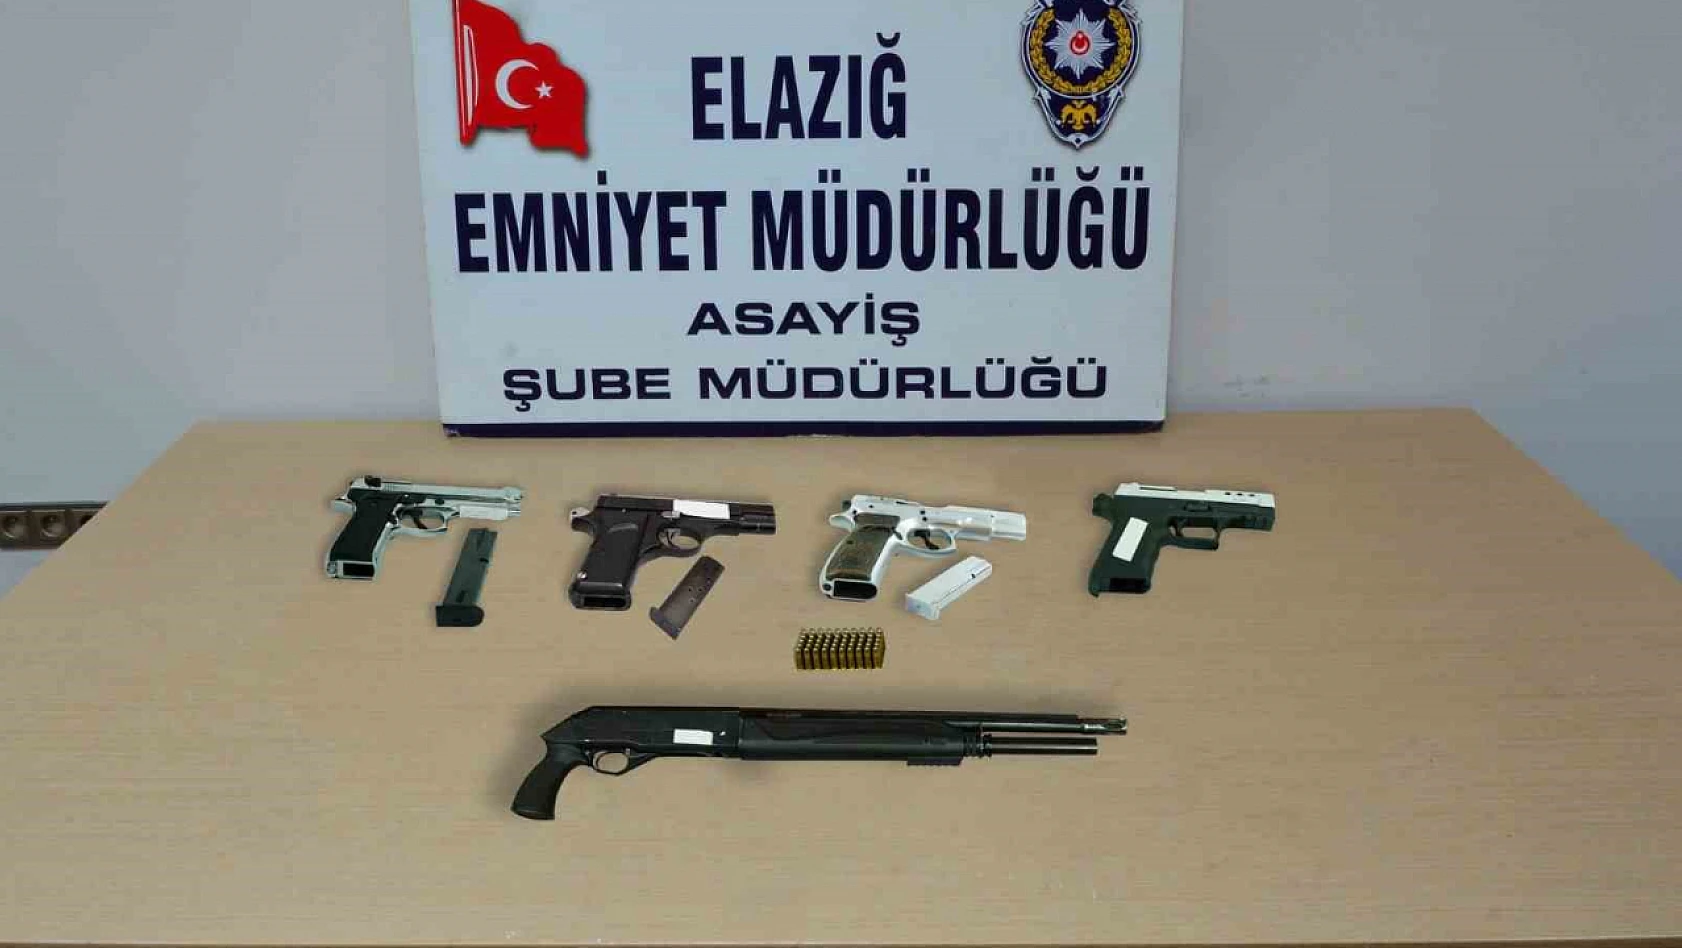 Elazığ'da asayiş ve şok uygulaması: 21 kişi tutuklandı